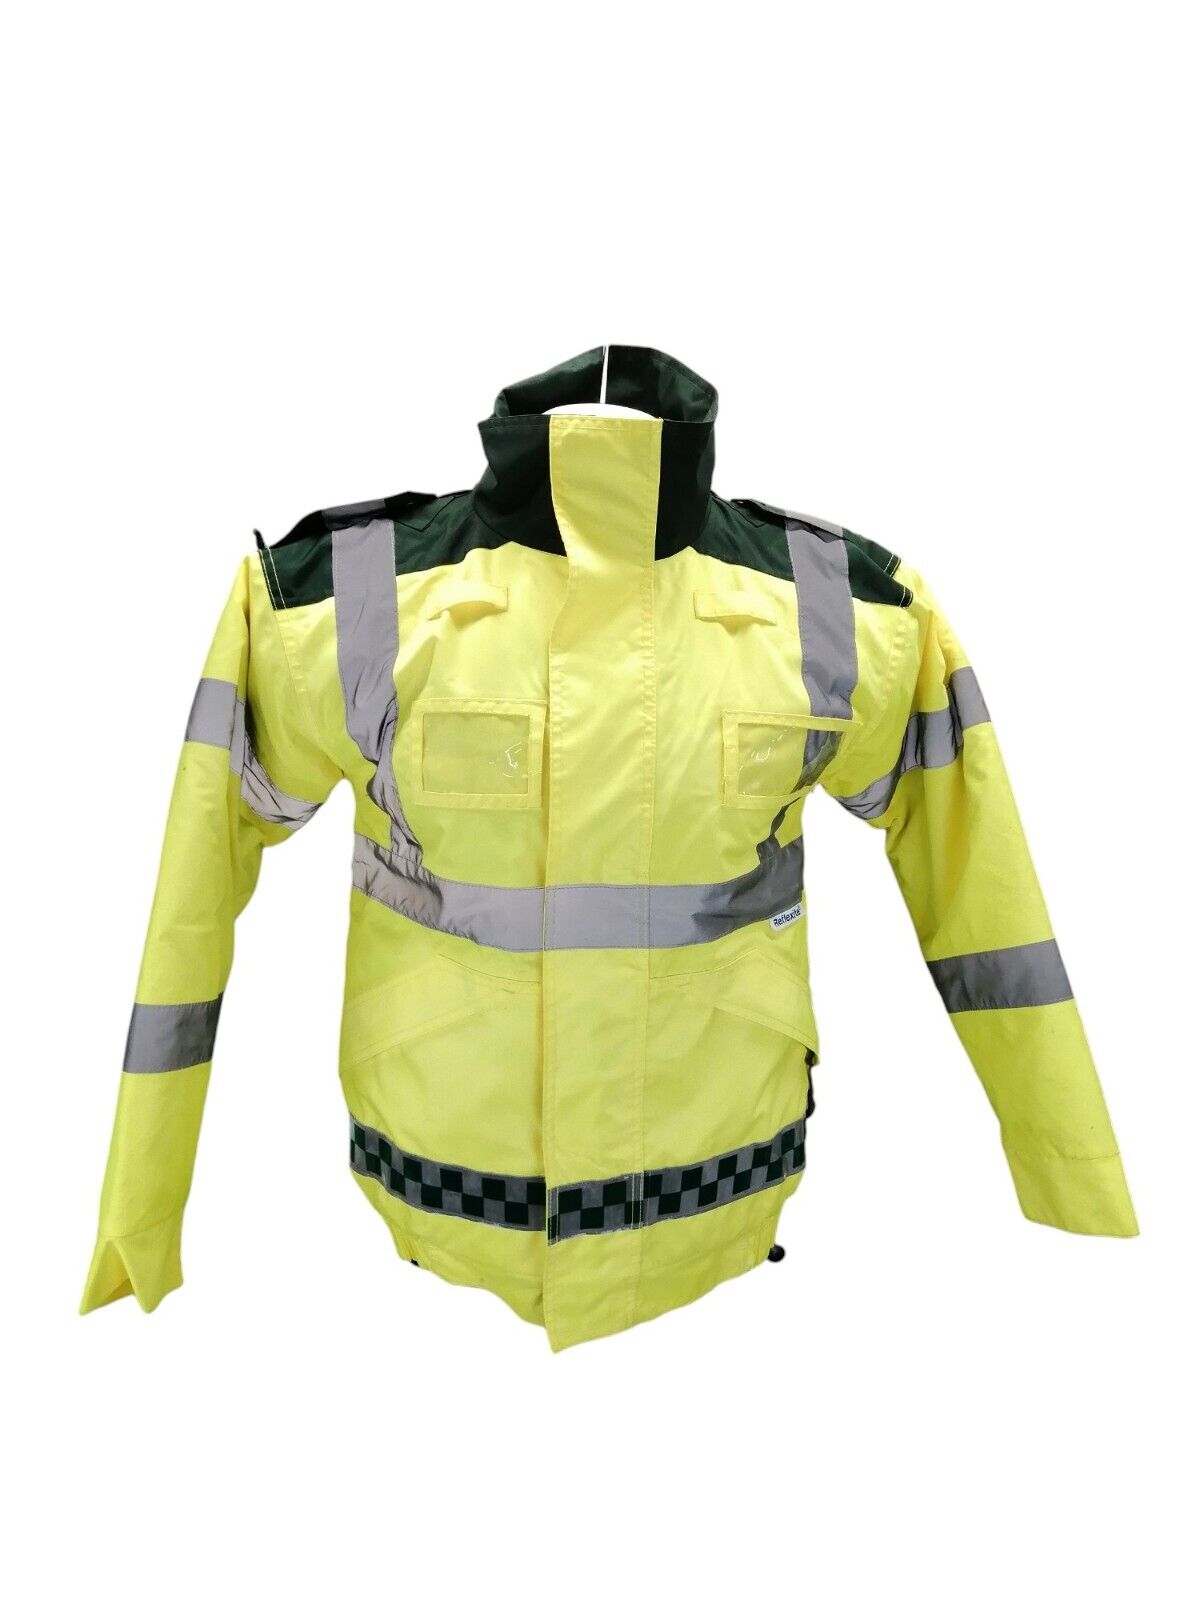 Ex Paramedic Hi Vis Jacket EMT Waterproof Lined Ambulance Safety